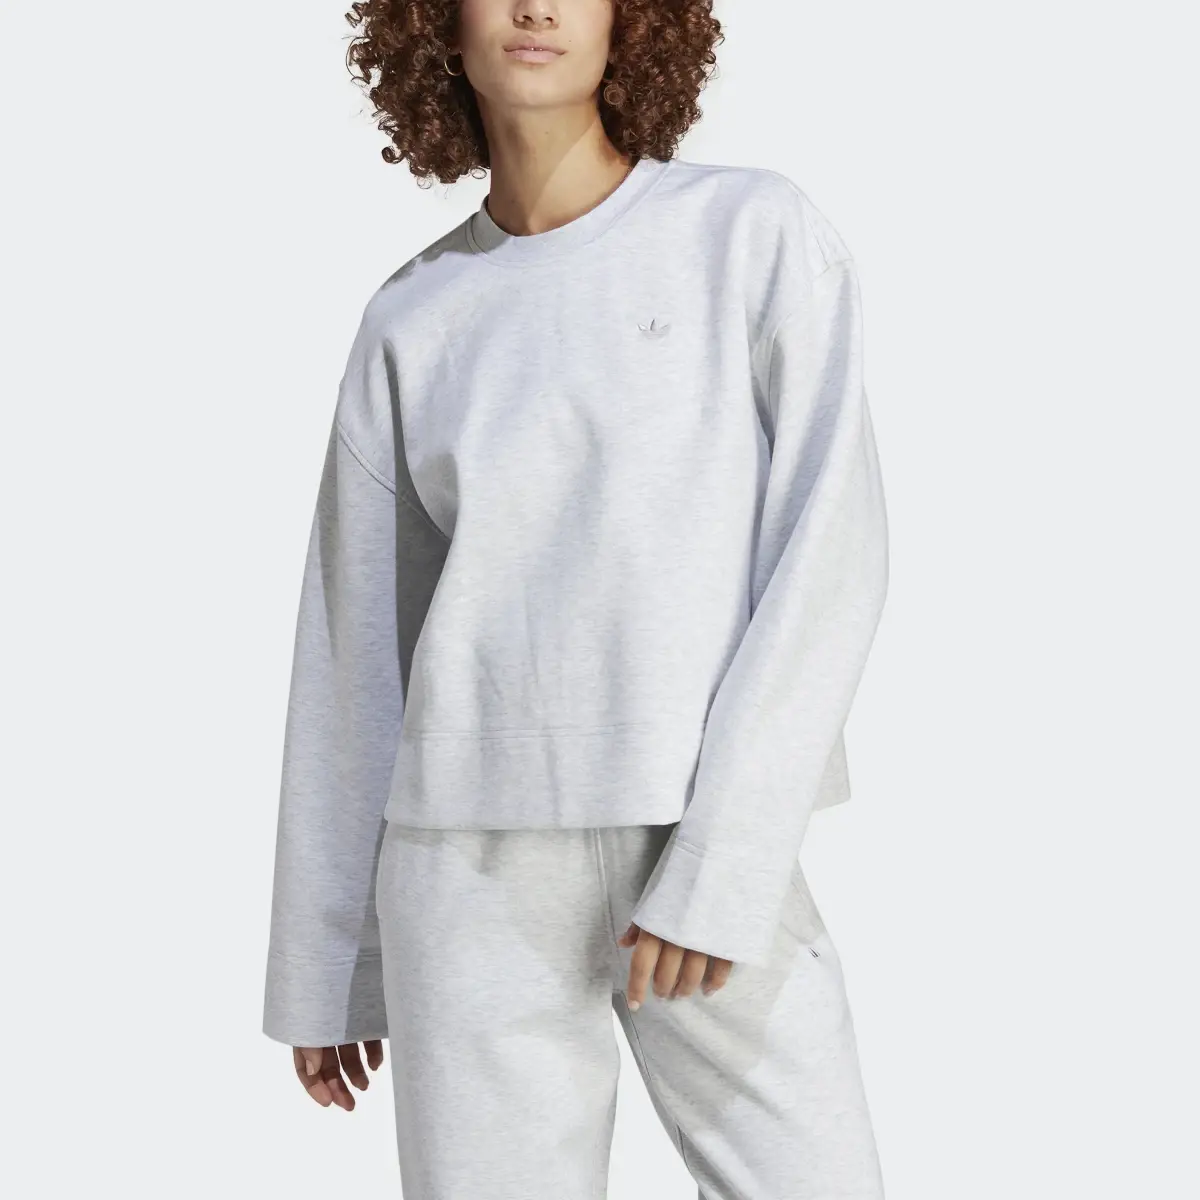 Adidas Premium Essentials Crew Sweatshirt. 1